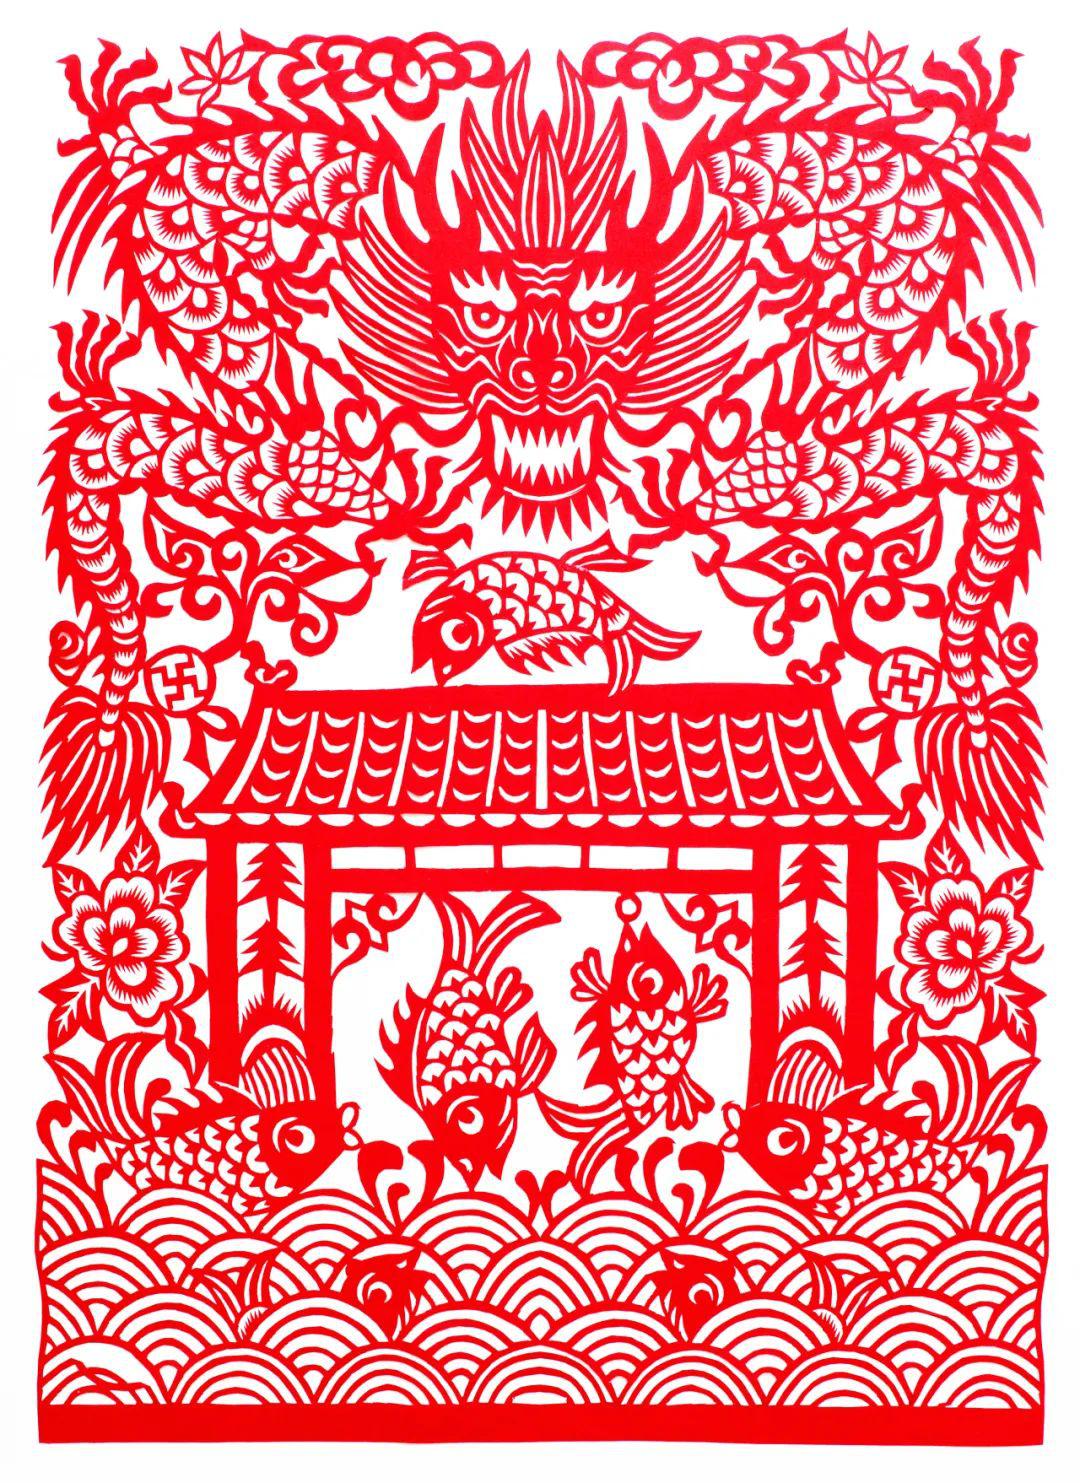 中国民间剪纸微刊《百年献瑞迎新年》全国龙文化剪纸精品展览 图201